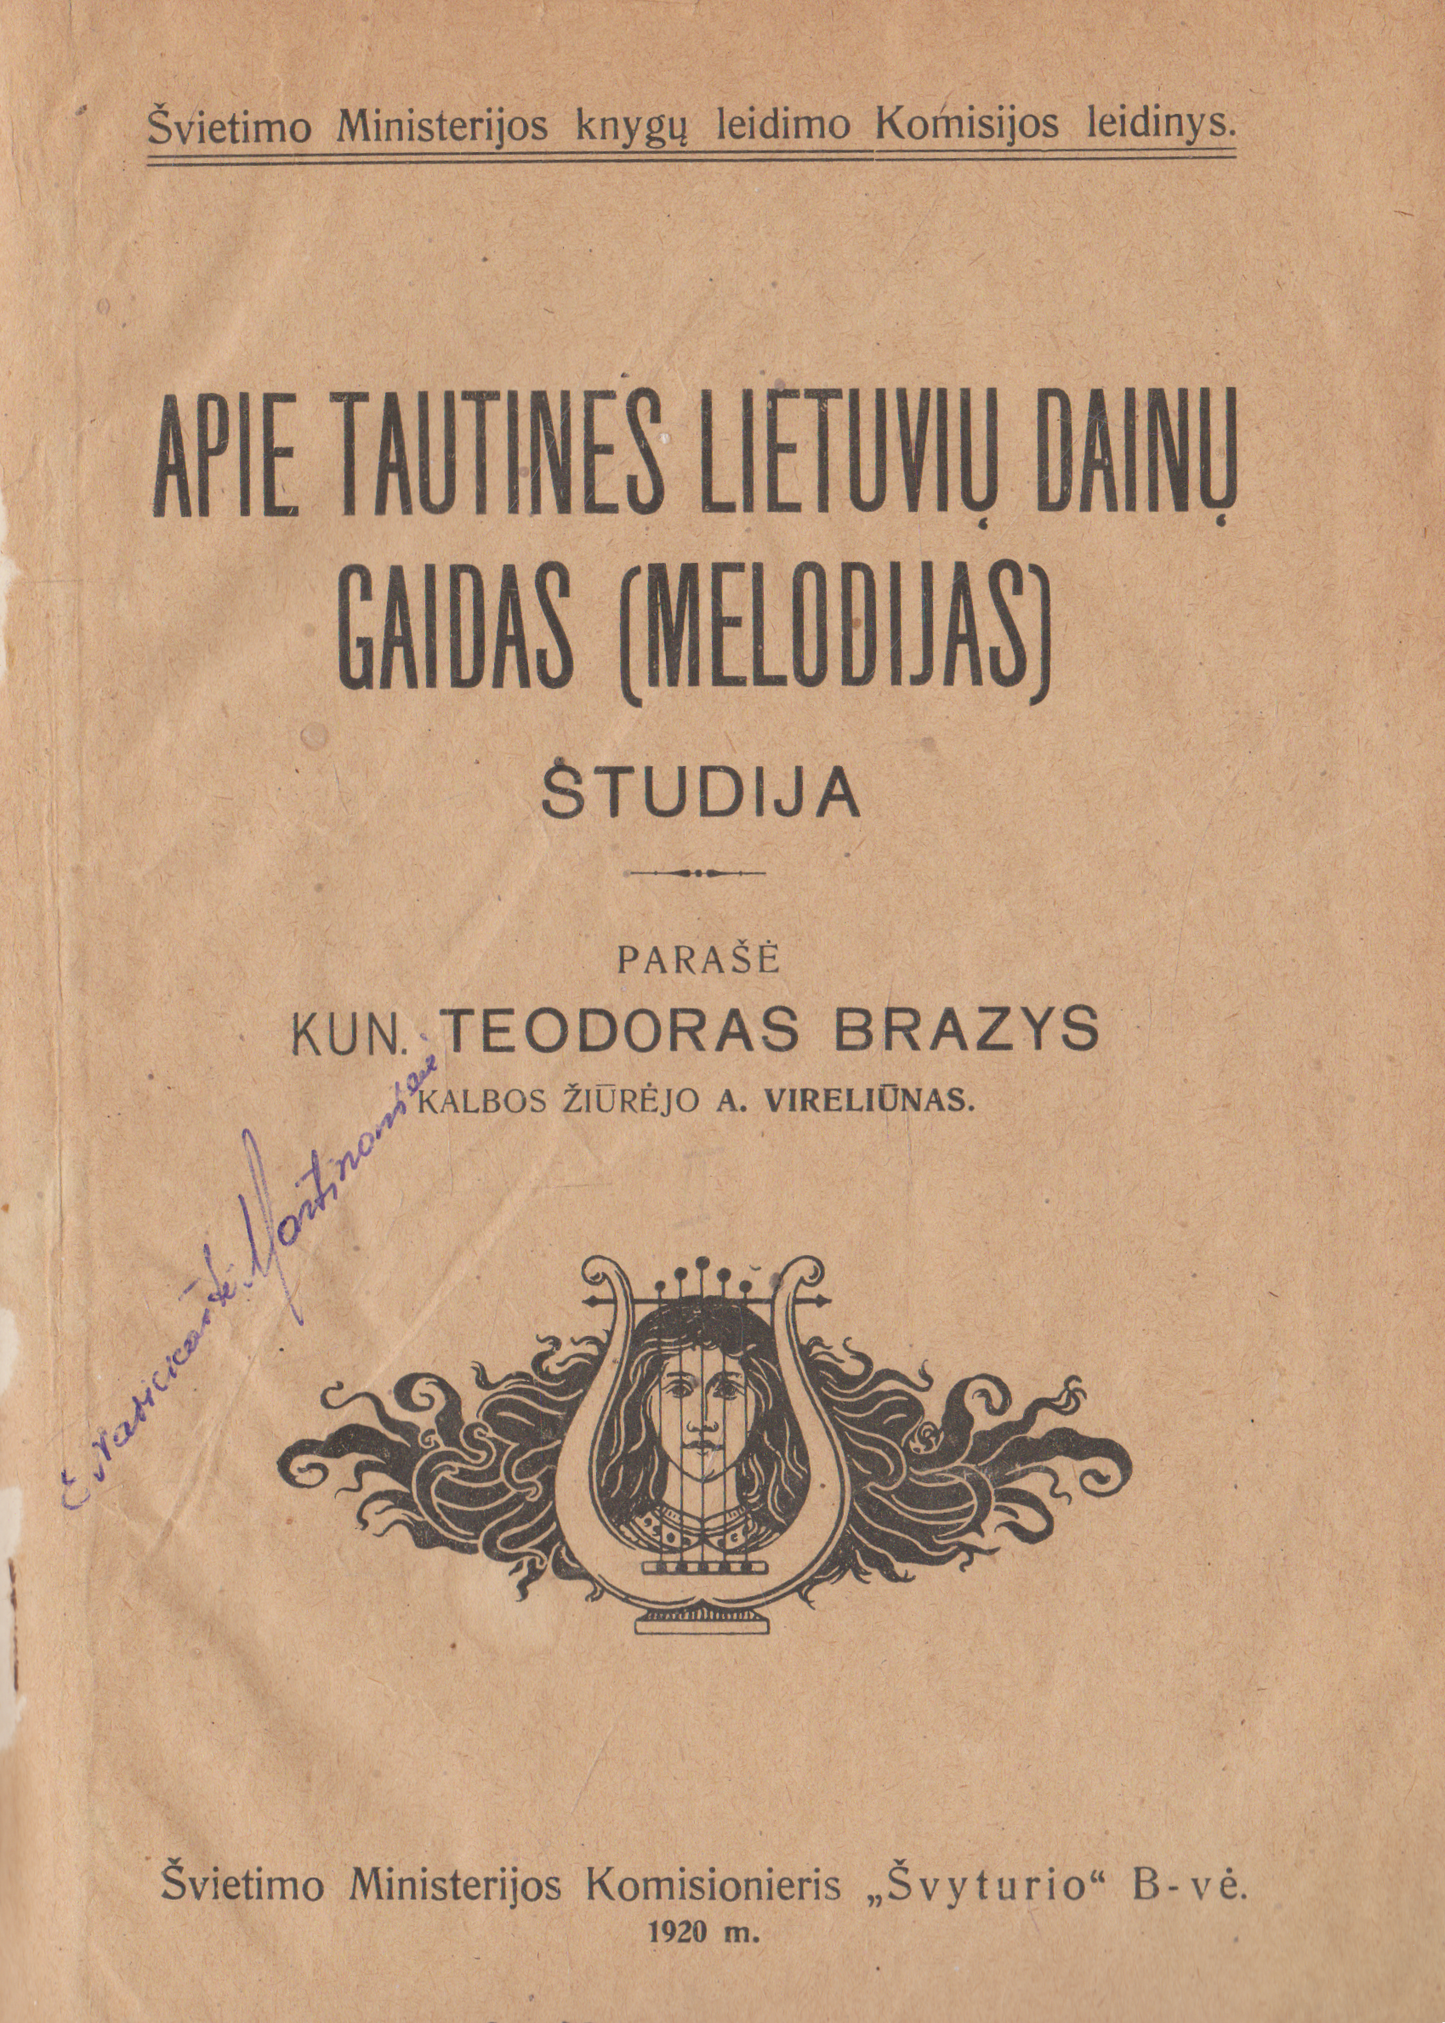 Kun. Teodoras Brazys - Apie tautines lietuvių dainų gaidas (melodijas), 1920 m.